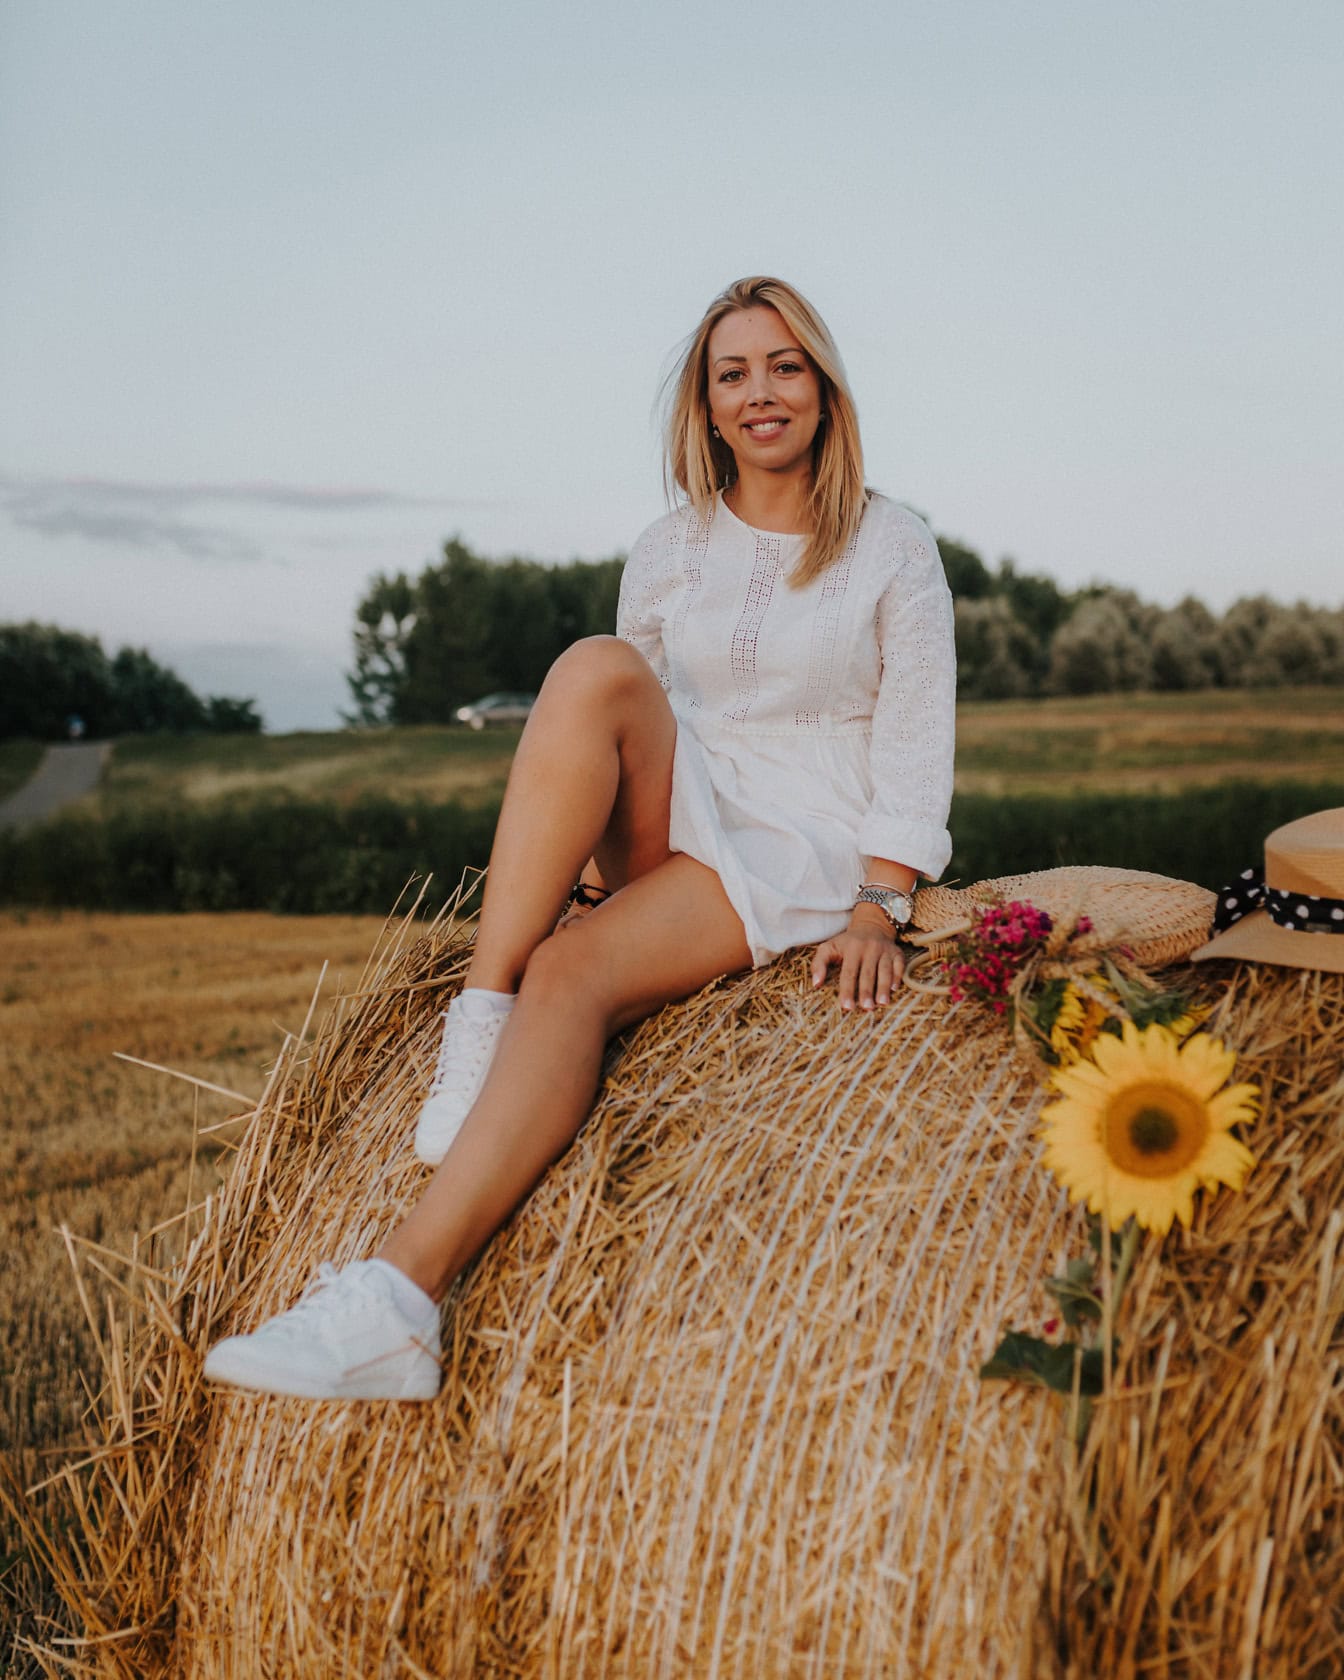 Upea hymyilevä blondi tyttö istuu heinäsuovassa valkoisessa maalaismekossa